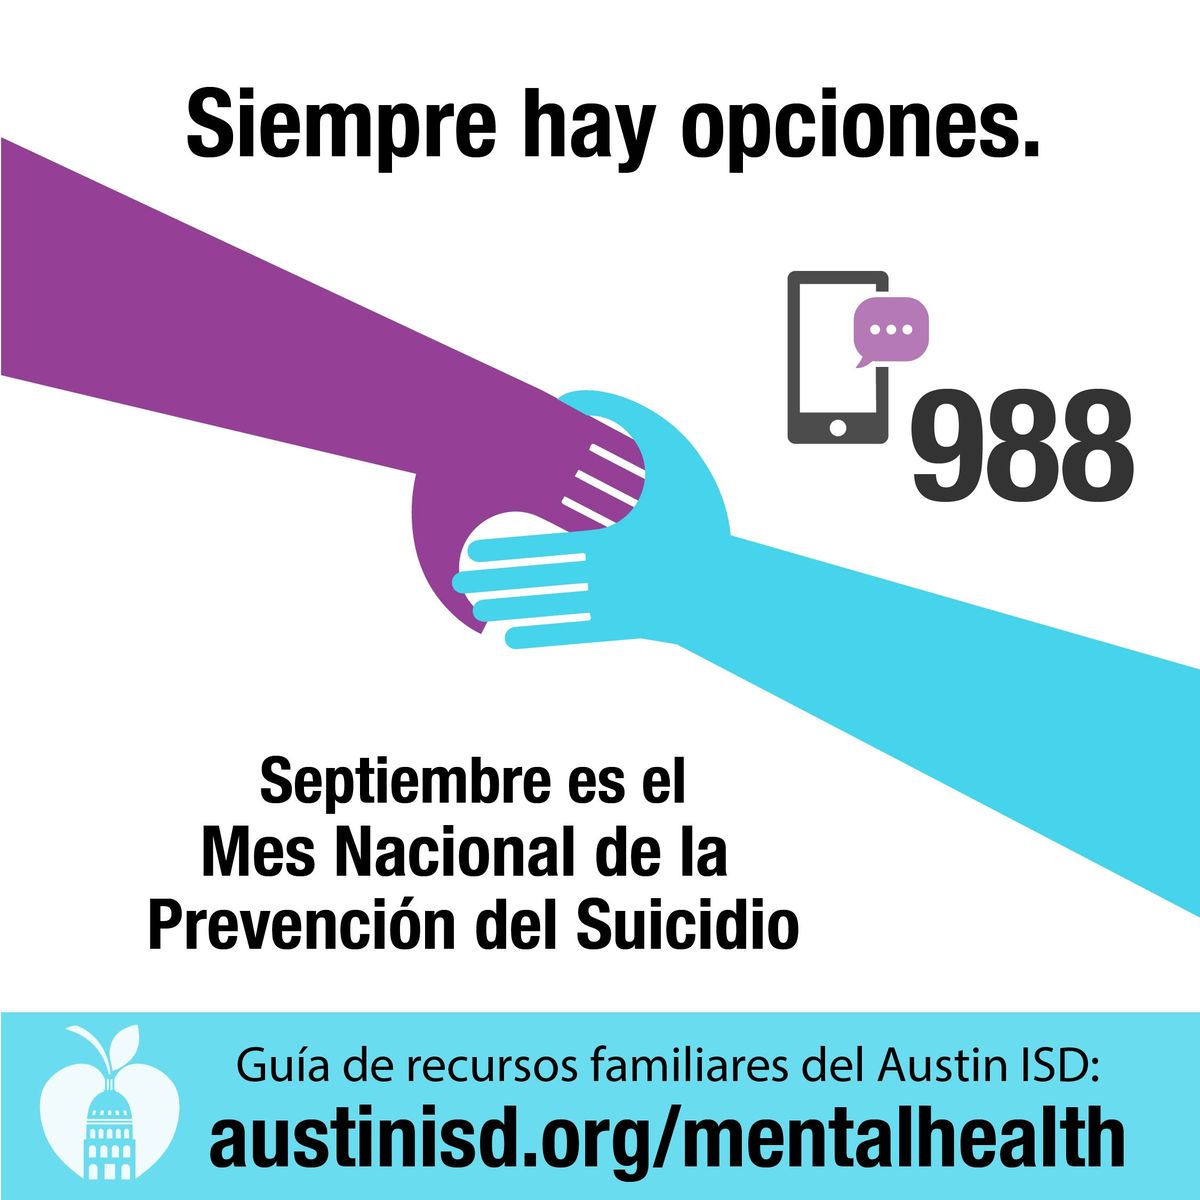 Siempre hay opciones. Septiembre es el Mes Nacional de la Prevención del Suicidio. Guía de recursos familiares del Austin ISD: www.austinisd.org/mentalhealth